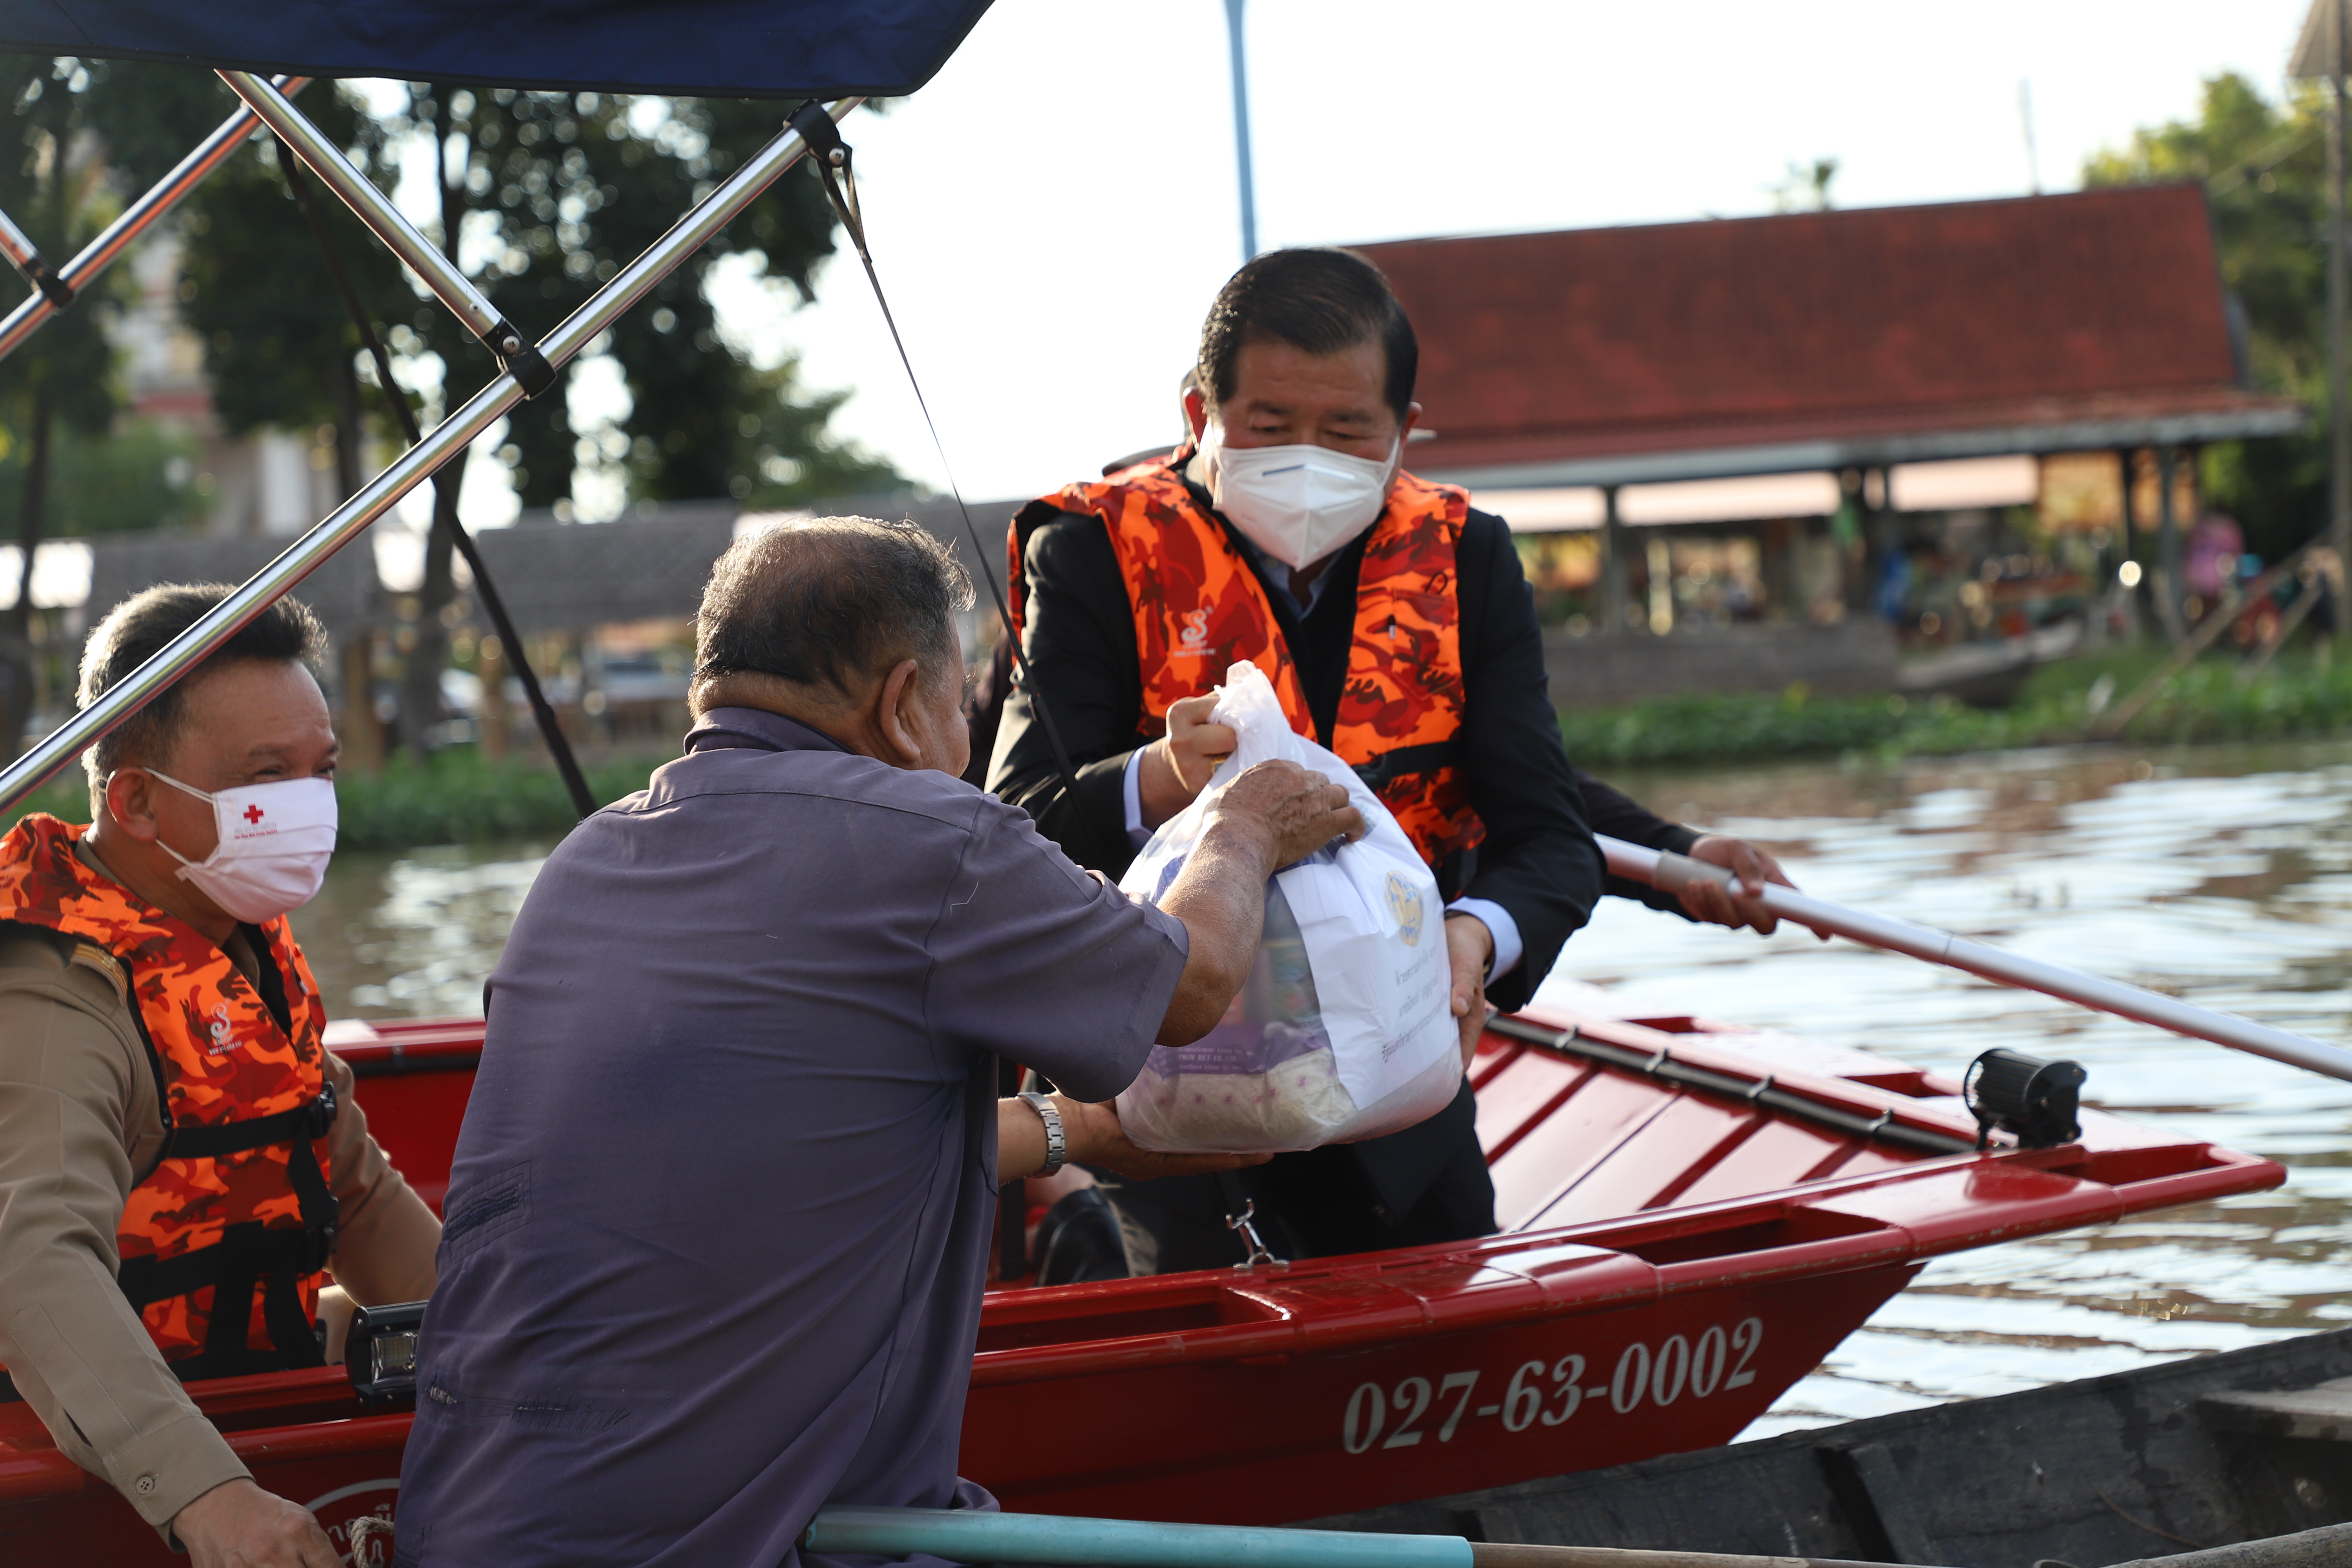 รมช.มหาดไทย ลงพื้นที่เยี่ยมผู้ประสบภัยน้ำท่วมในพื้นที่ จ.อยุธยา สั่งเร่งเยียวยาให้ครอบคลุมความเสียหาย พร้อมดูแลทุกปัญหาของประชาชน